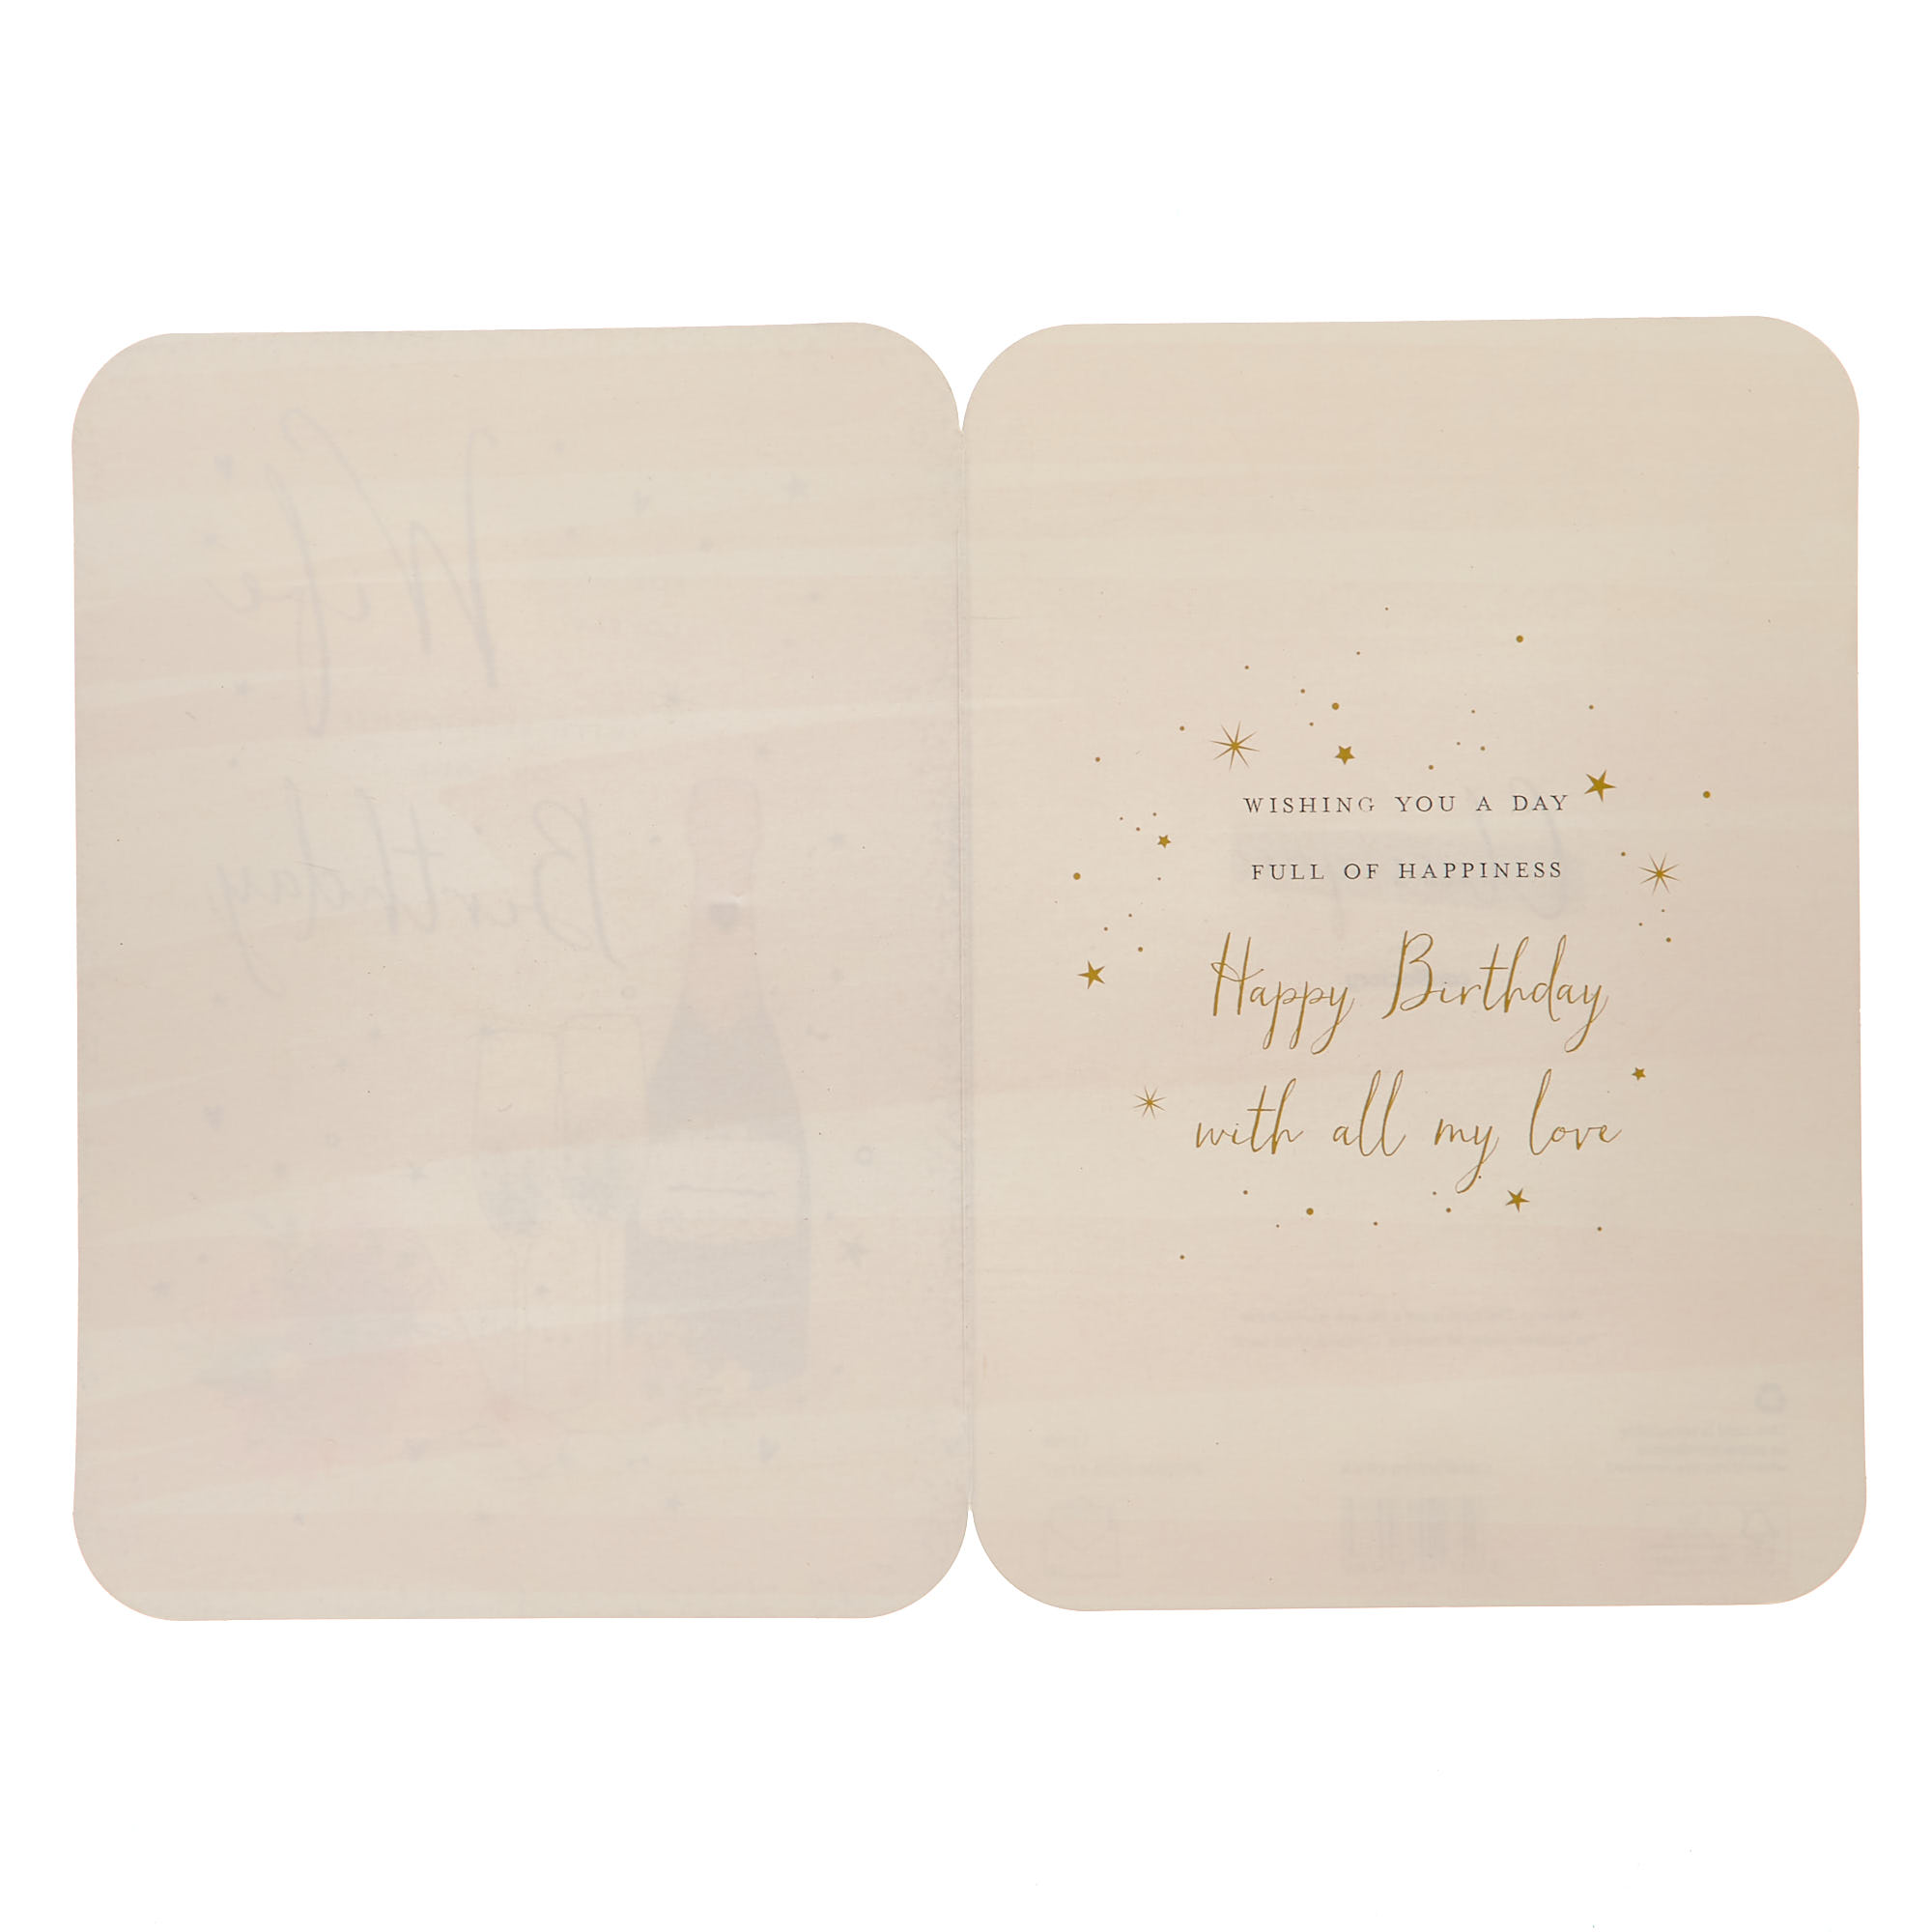 Birthday Card - Lovely Wife Sparkle